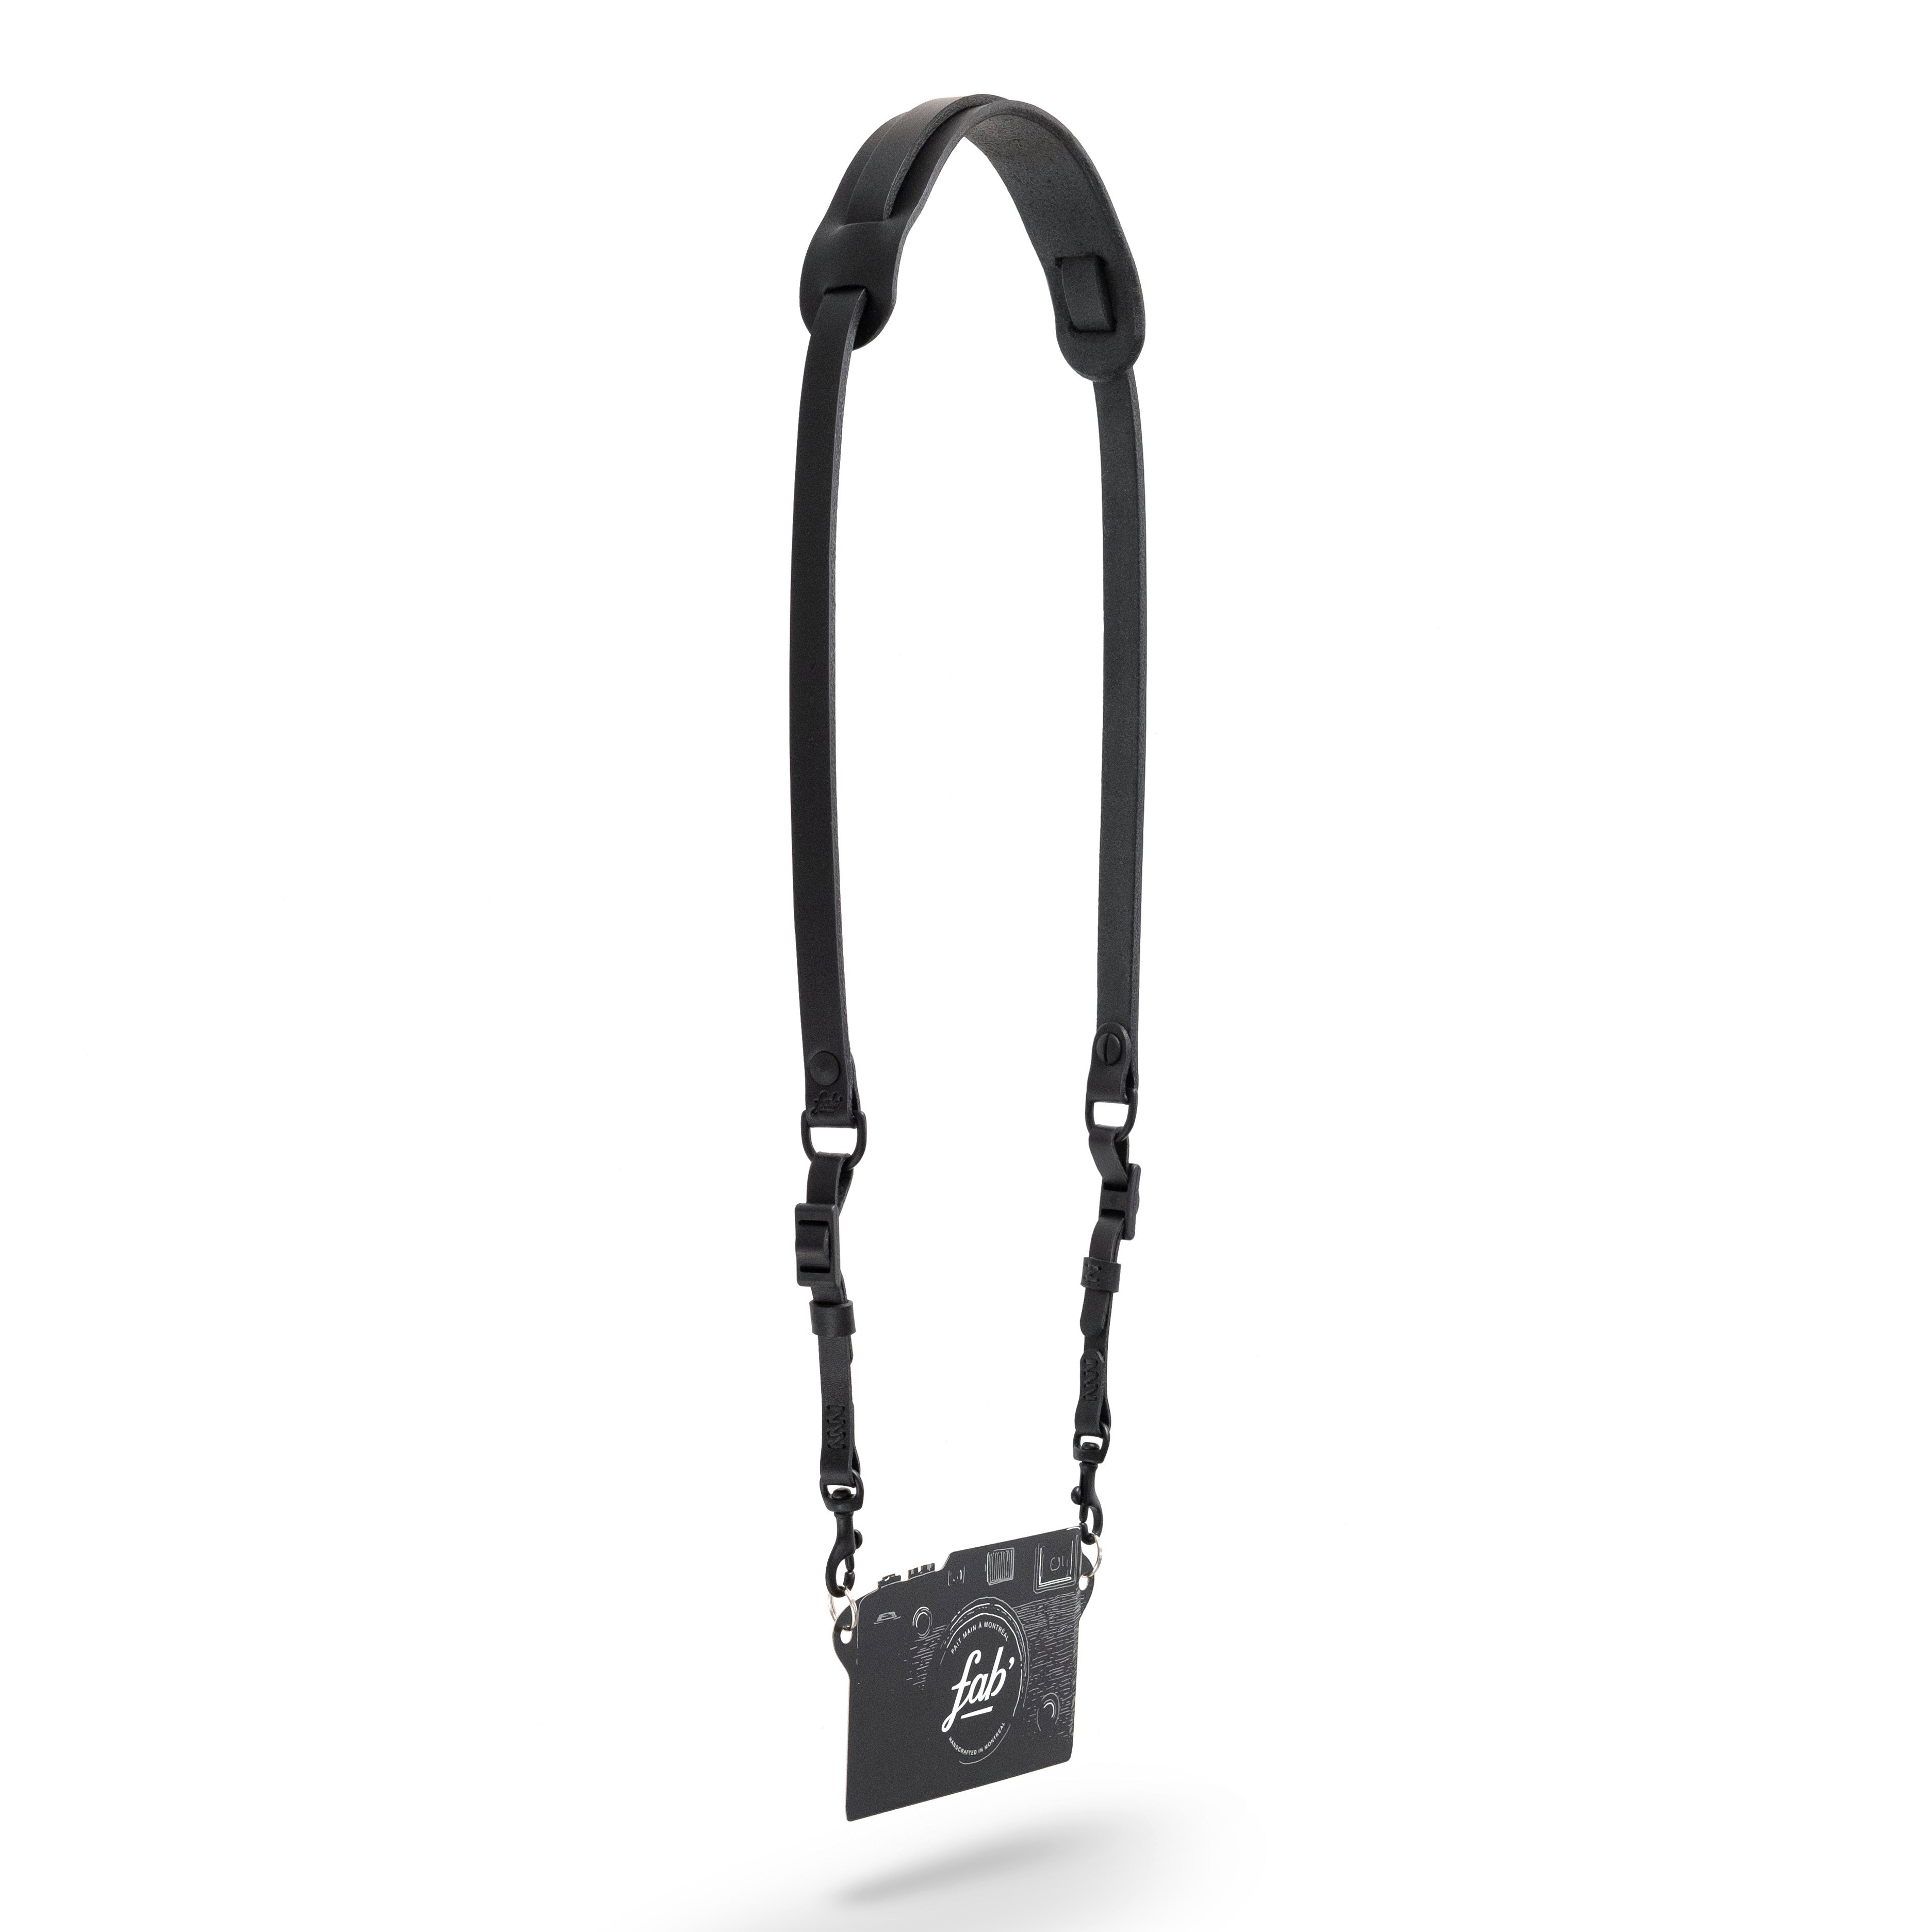 Fab' F11 strap - Black leather - Size XL (55")